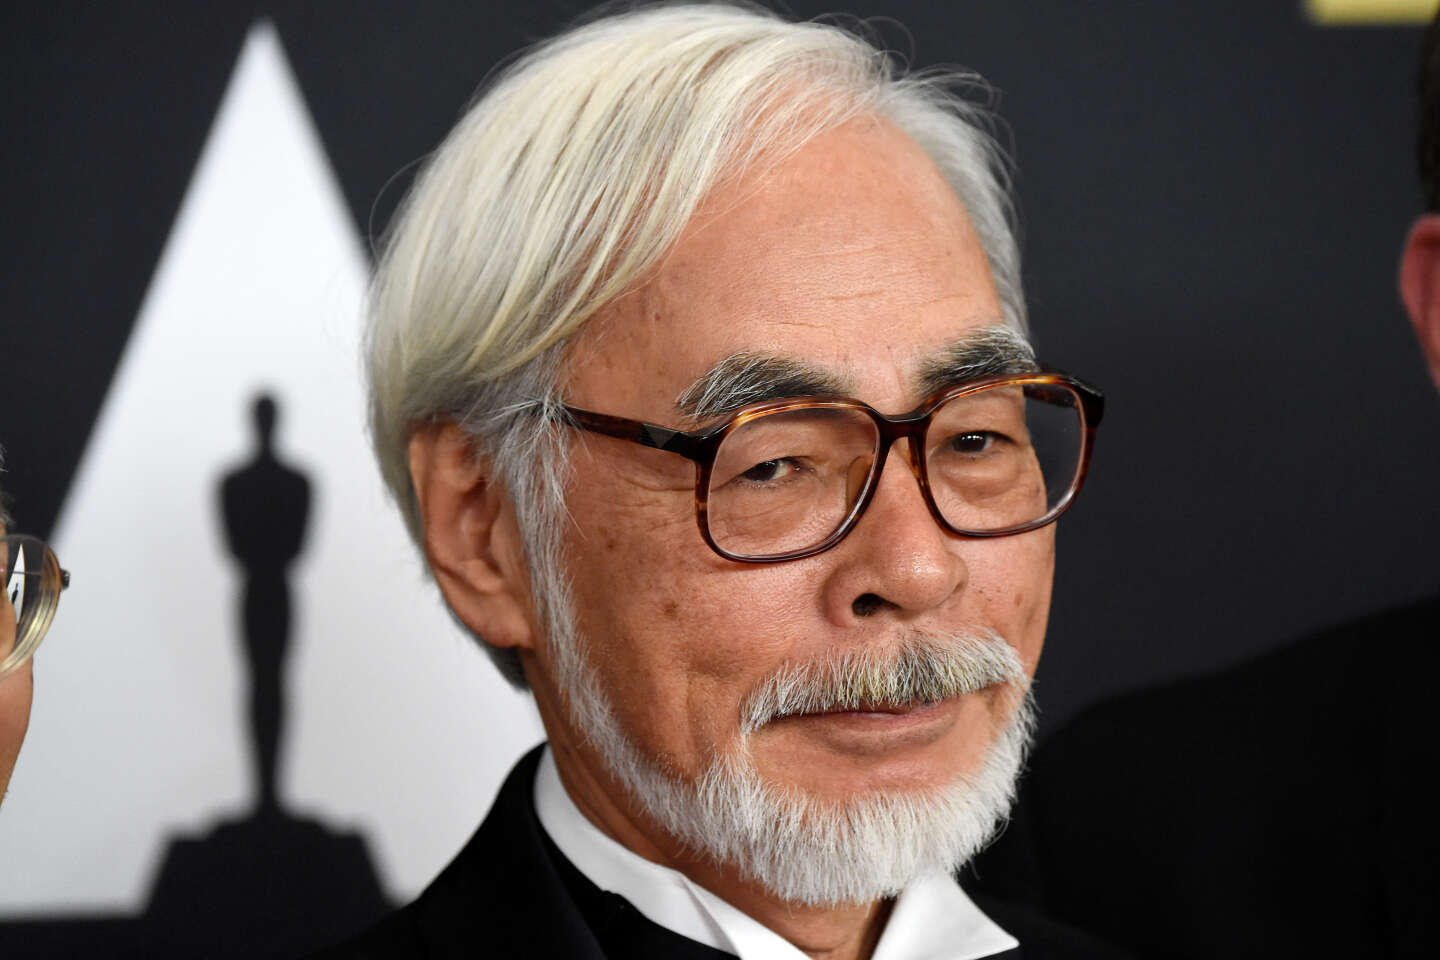 Le Garçon et le Héron de Hayao Miyazaki (Film) : la critique Télérama